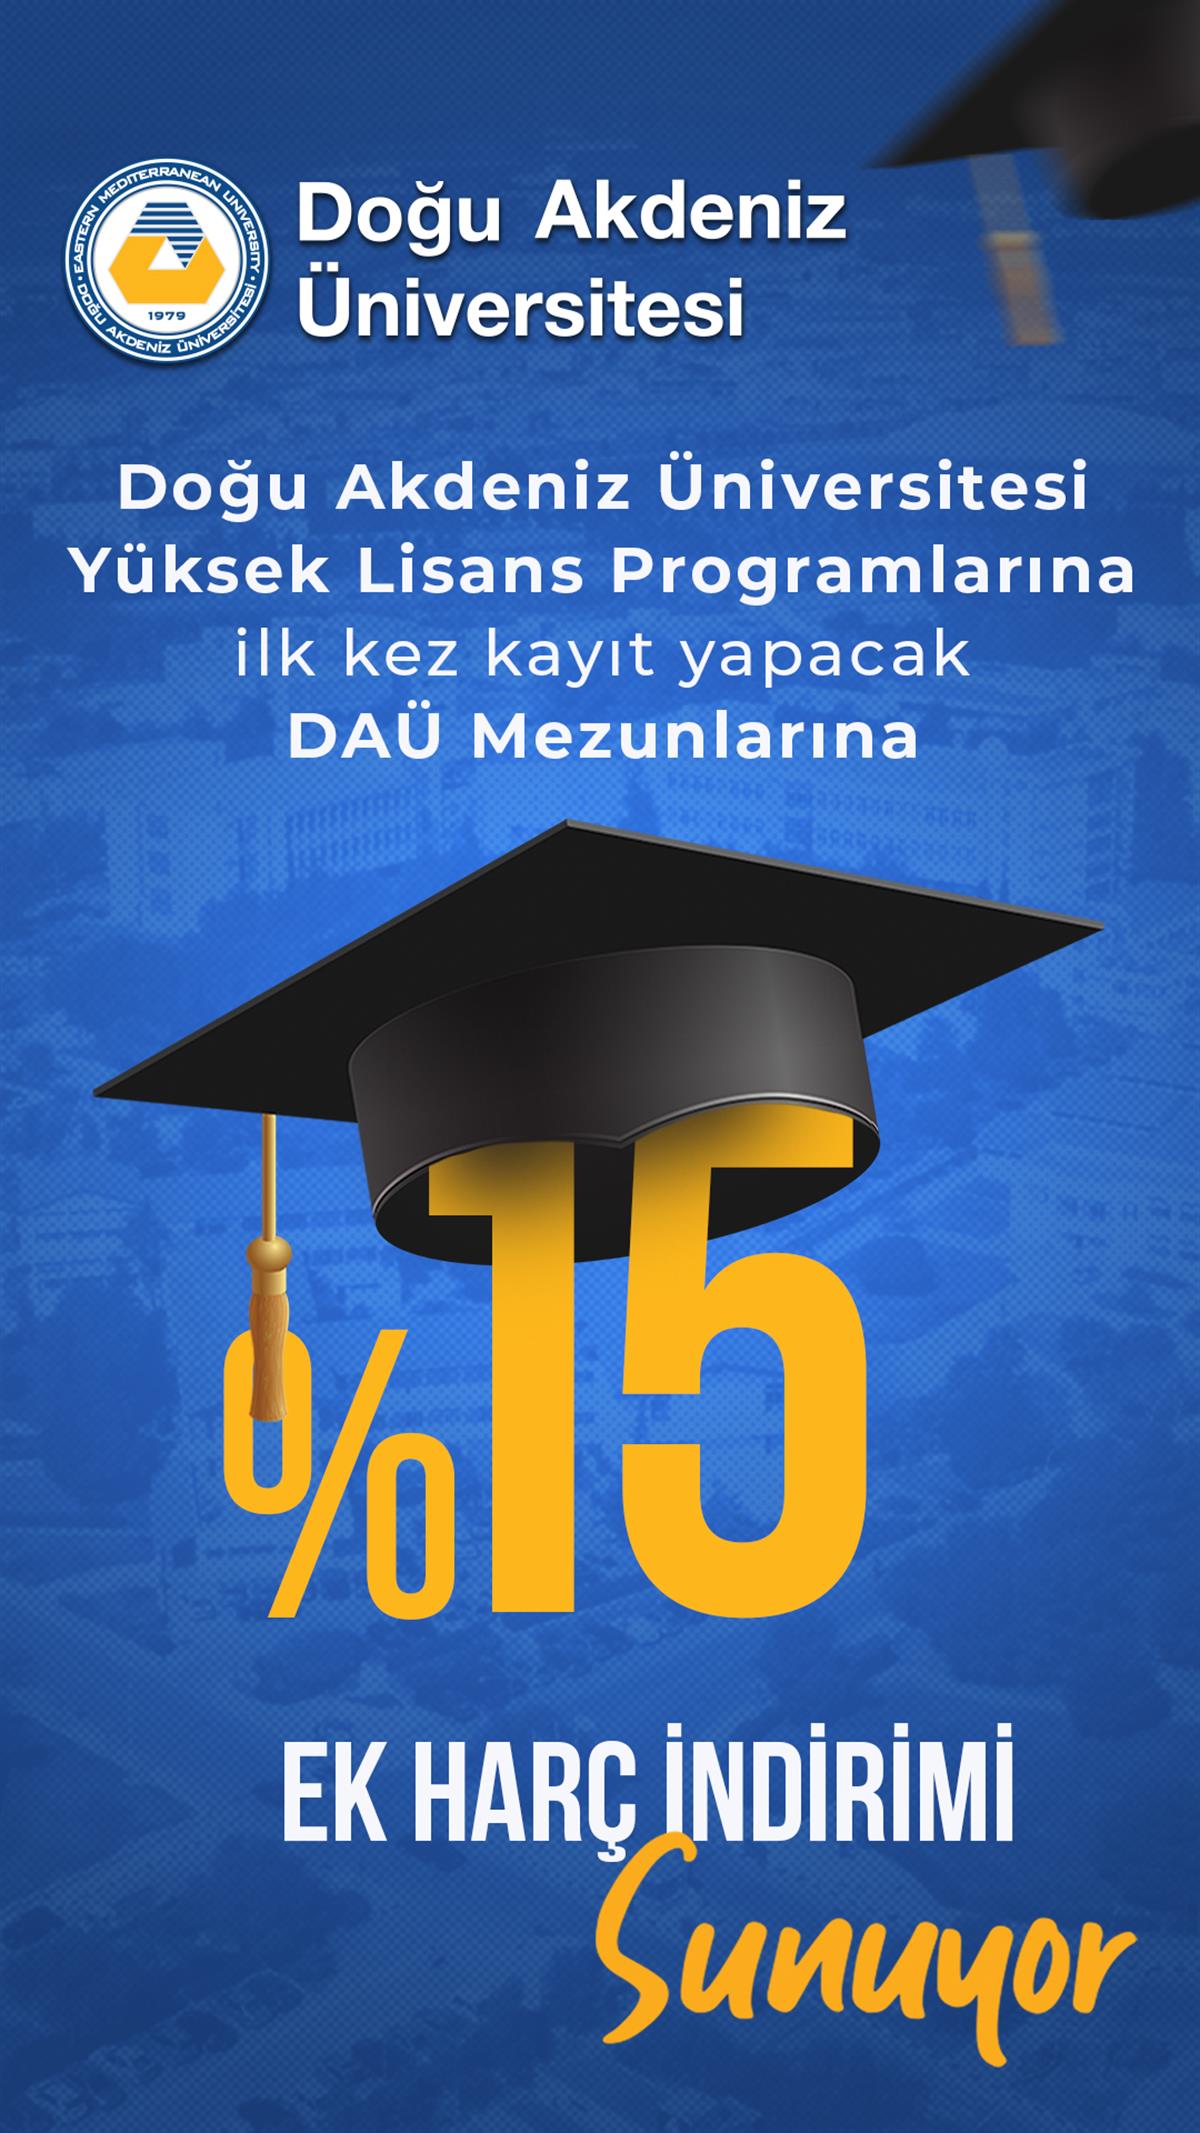 Doğu Akdeniz Üniversitesi, Mezunlarına Yüksek Lisans Program Yeni Kayıtlarında %15 Öğrenim Ücret İndirimi Sunuyor